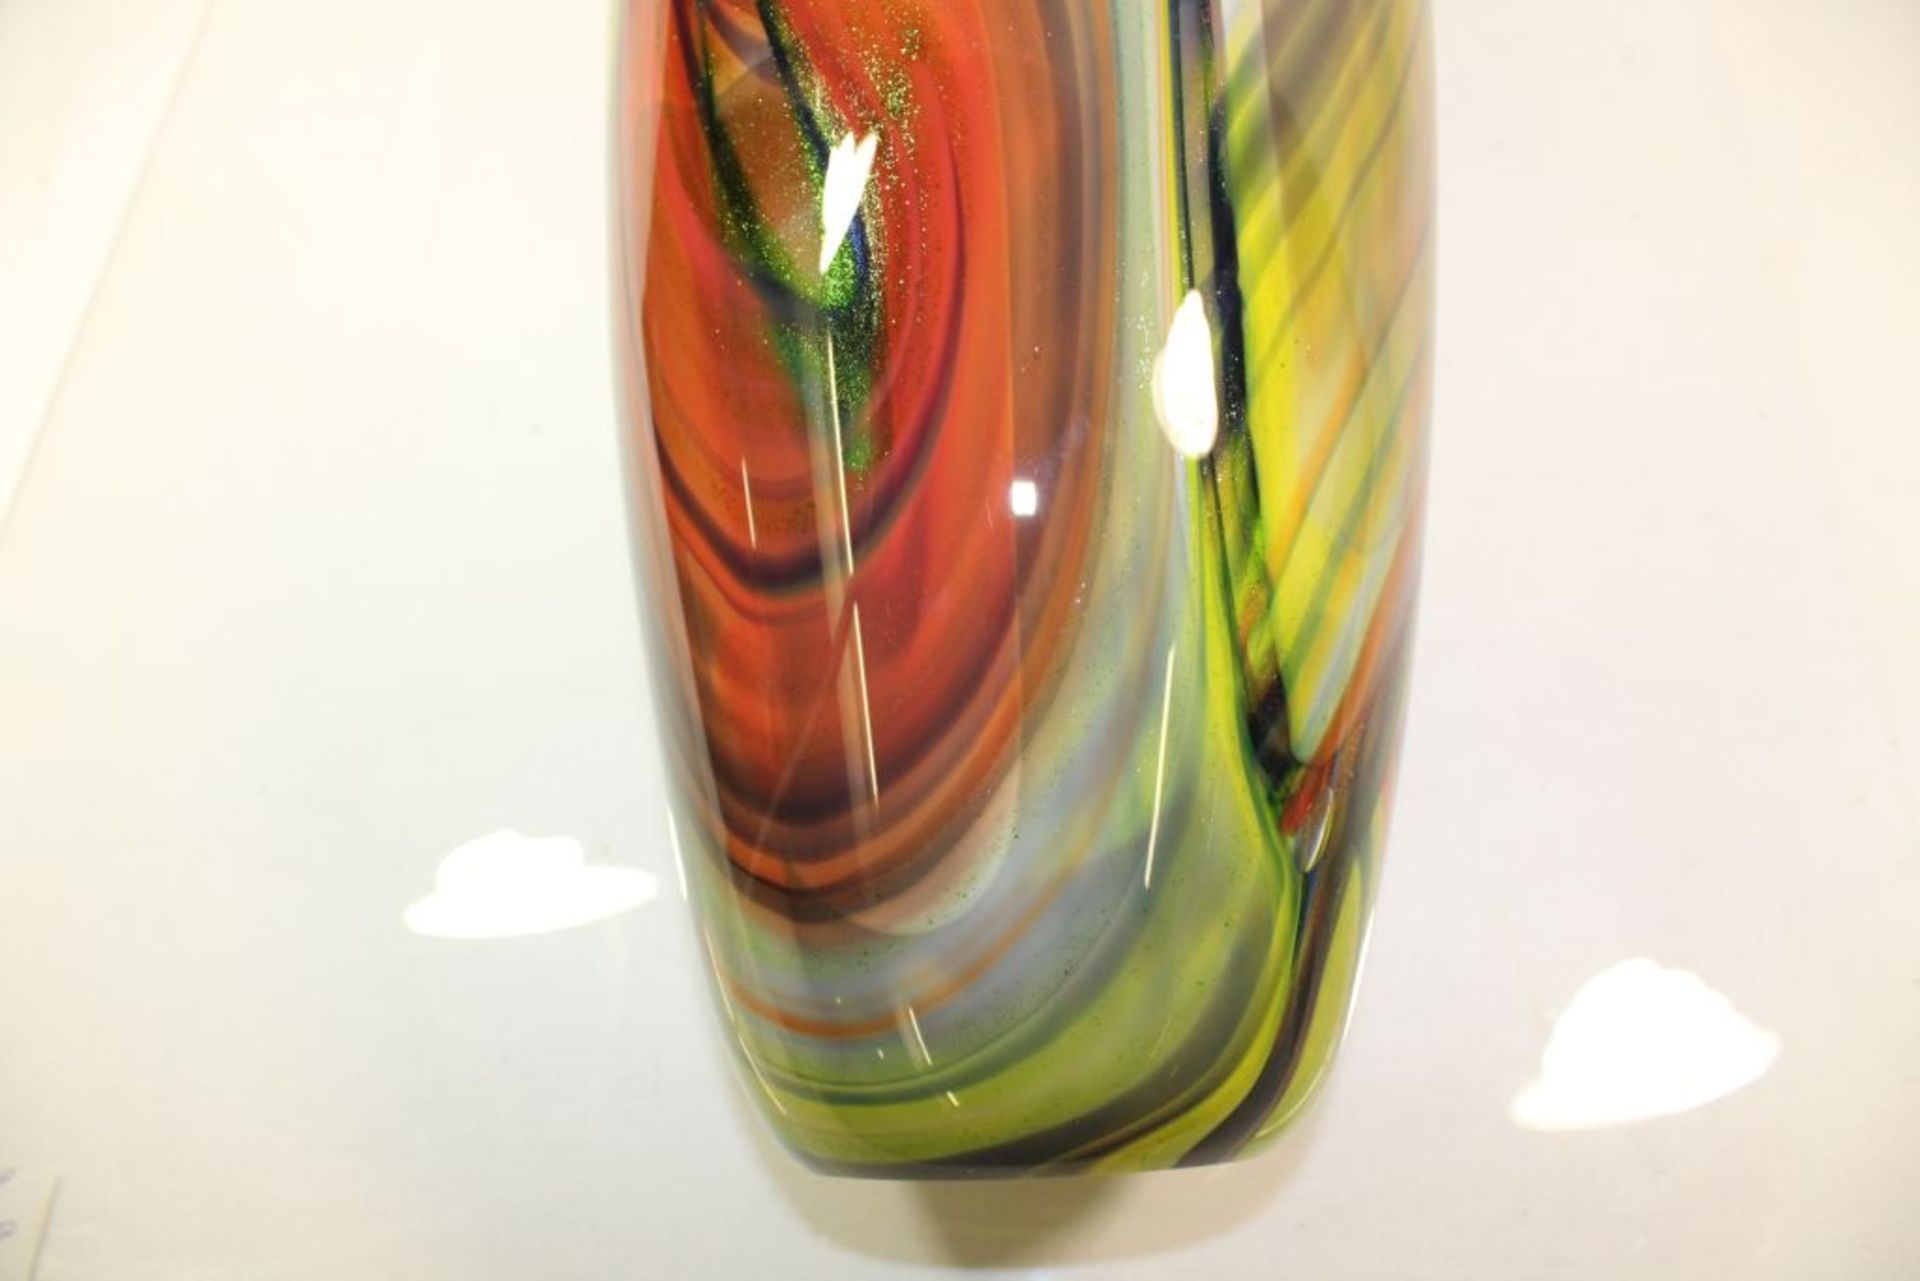 hohe Kunstglas-Vase, farbige Einschmelzungen, H-45cm.- - -22.61 % buyer's premium on the hammer - Bild 6 aus 7